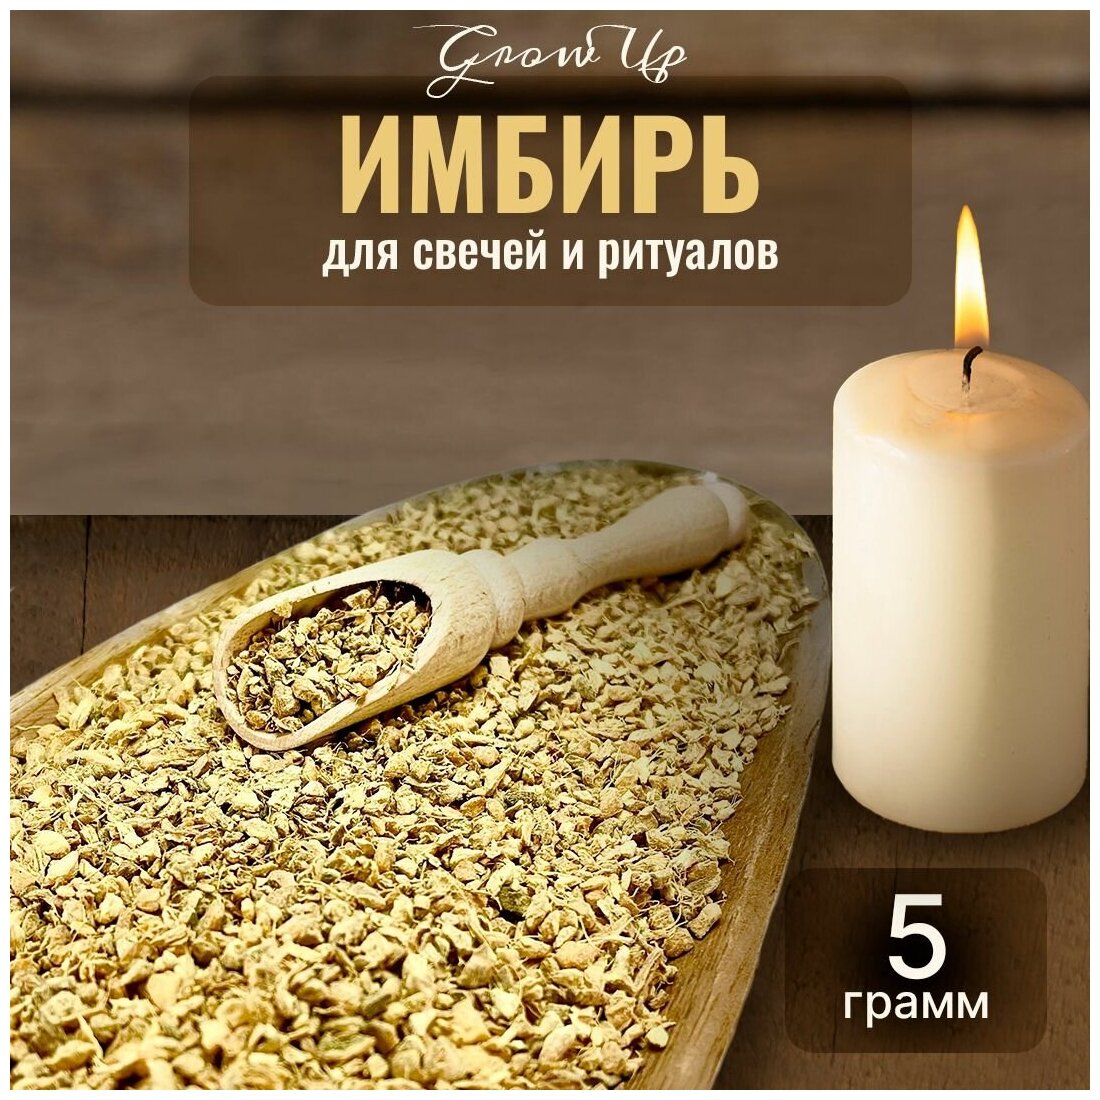 Сухая трава Имбирь мелкий (корень) для свечей и ритуалов, 5 гр